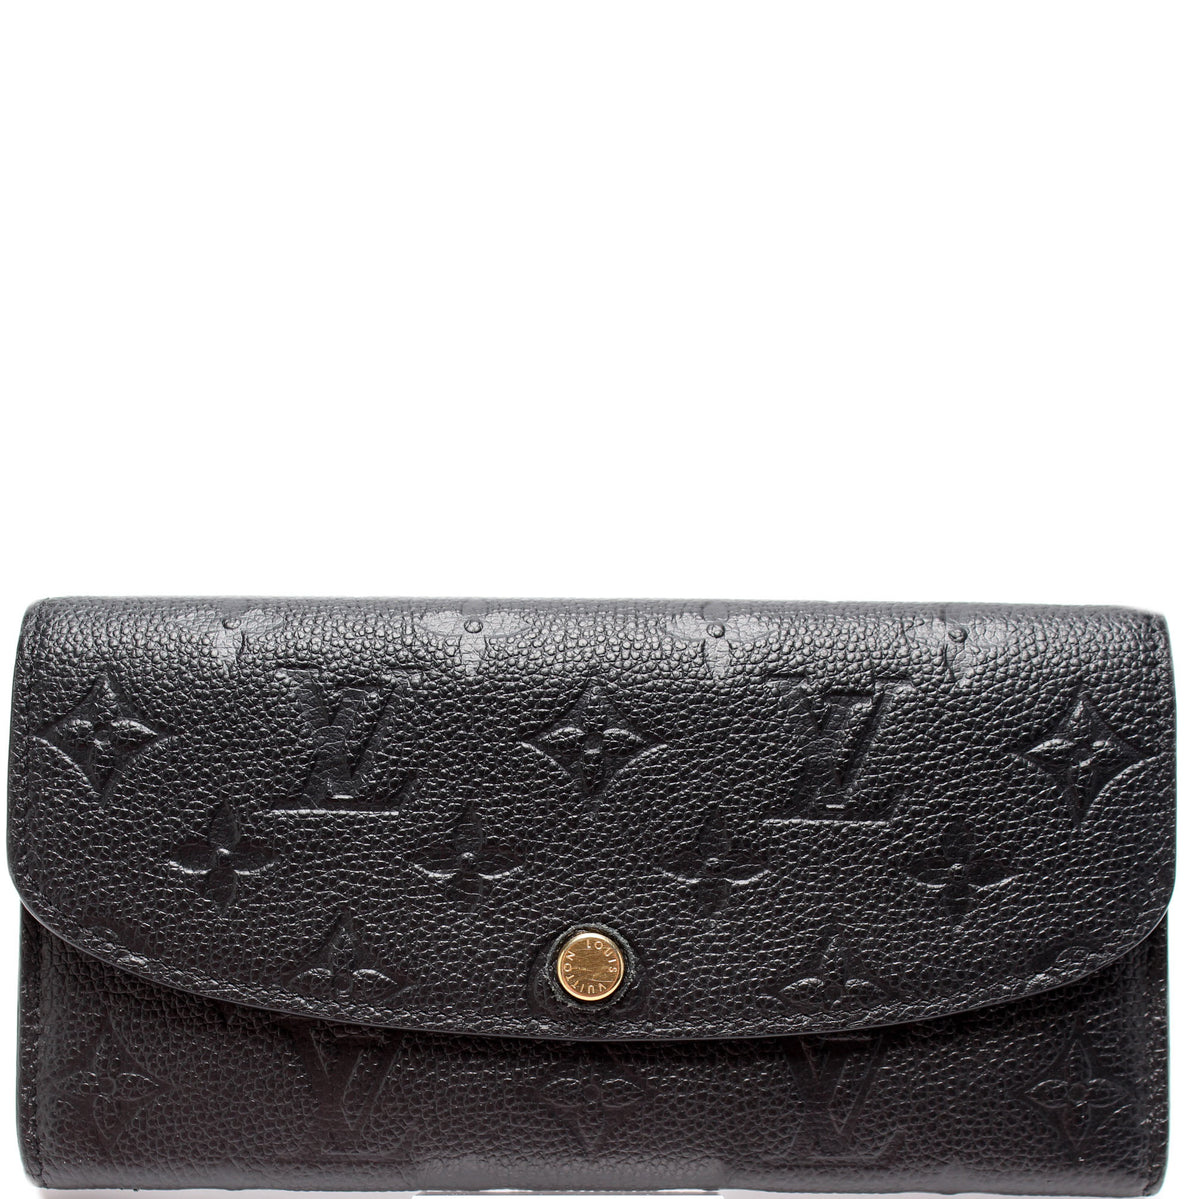 Emilie Wallet Monogram – Keeks Designer Handbags